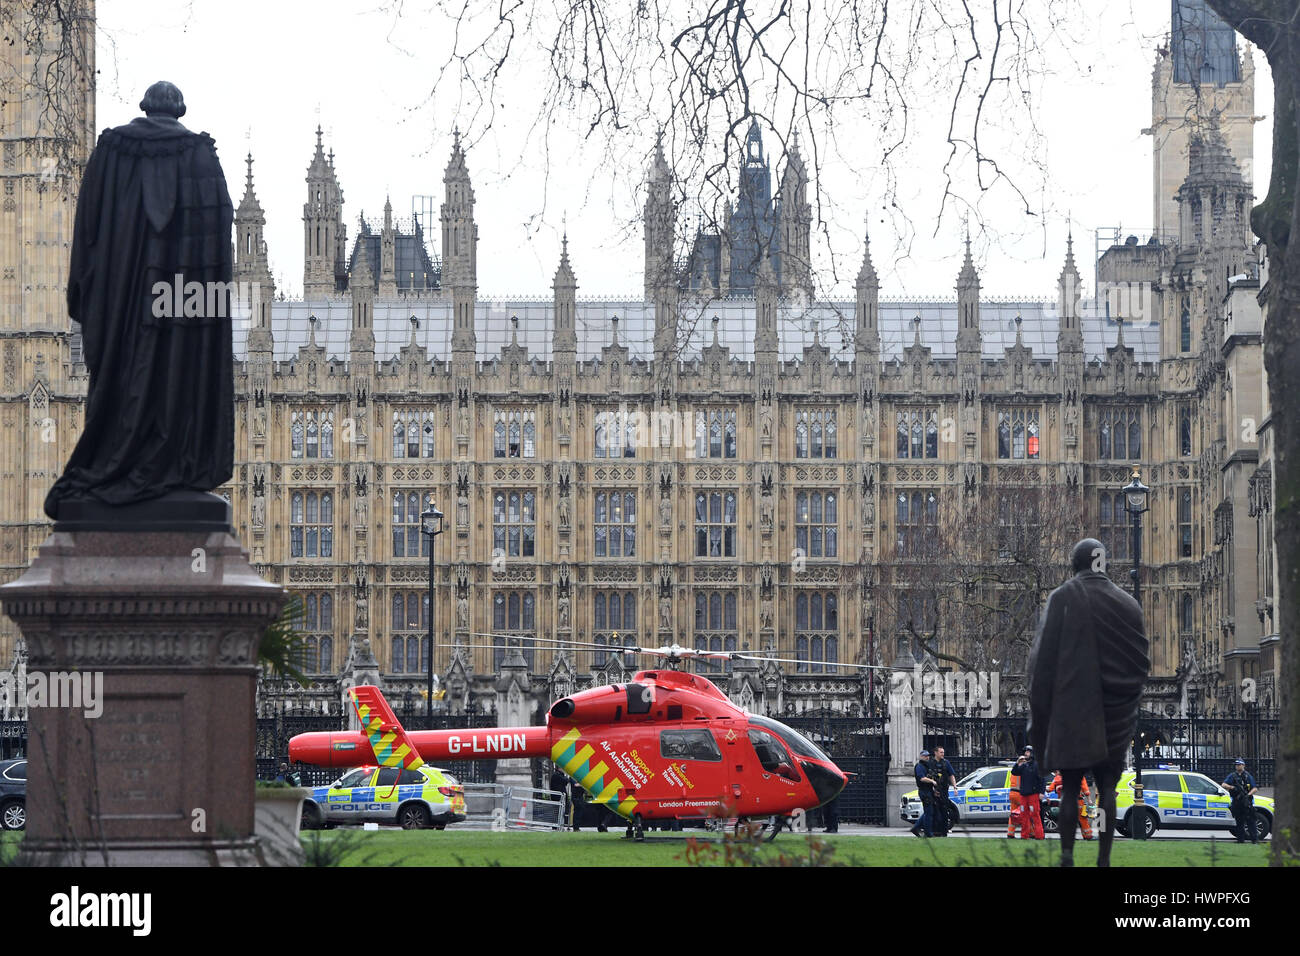 Ein Air Ambulance außerhalb des Palace of Westminster, London, nachdem klingt ähnlich wie Schüsse in der Nähe des Palace of Westminster gehört worden. Ein Mann mit einem Messer innerhalb der Grenzen des Palastes gesehen wurde, sagten Augenzeugen. Stockfoto